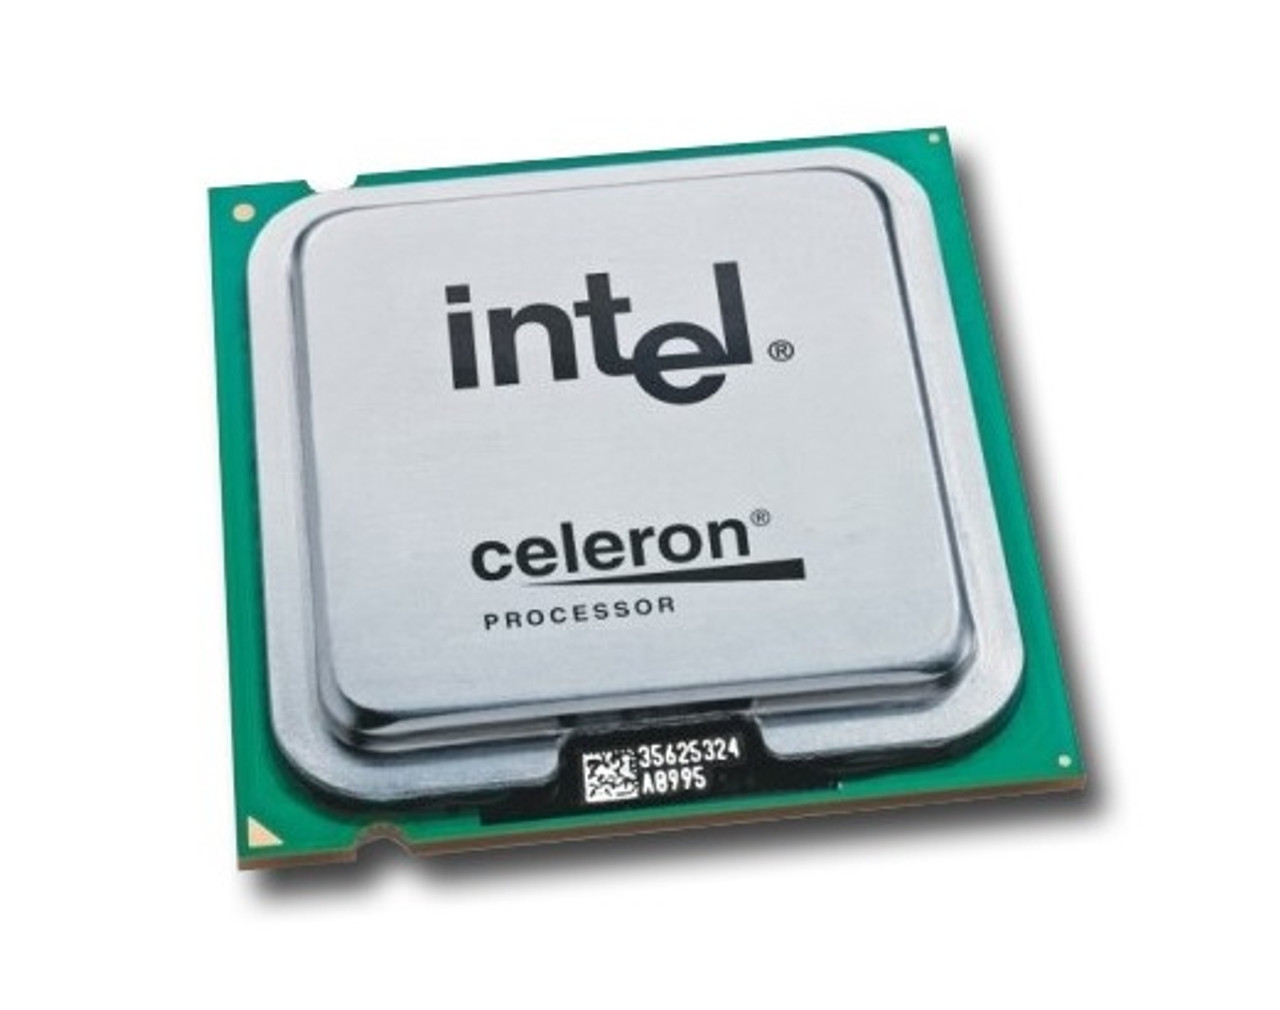 52RTG - Dell 1.60GHz 400MHz FSB 1MB L2 Cache Intel Celeron 380 Mobile Processor